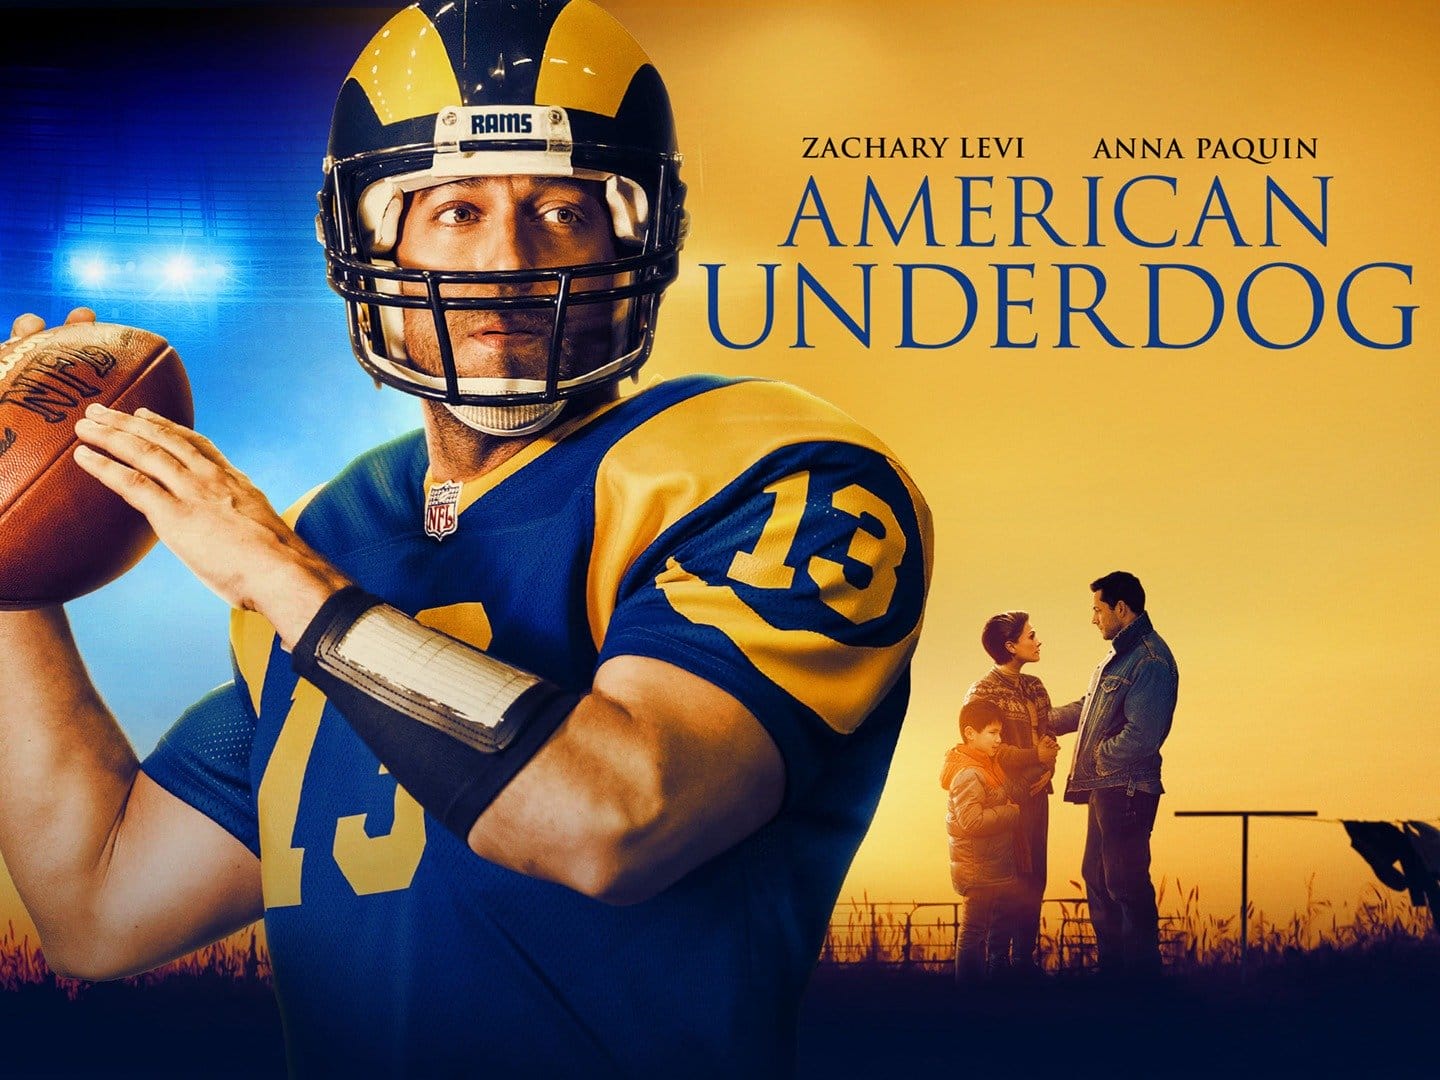 หนังฝรั่ง American Underdog (2021) ทัชดาวน์ สู่ฝันอเมริกันฟุตบอล (ซับไทย)